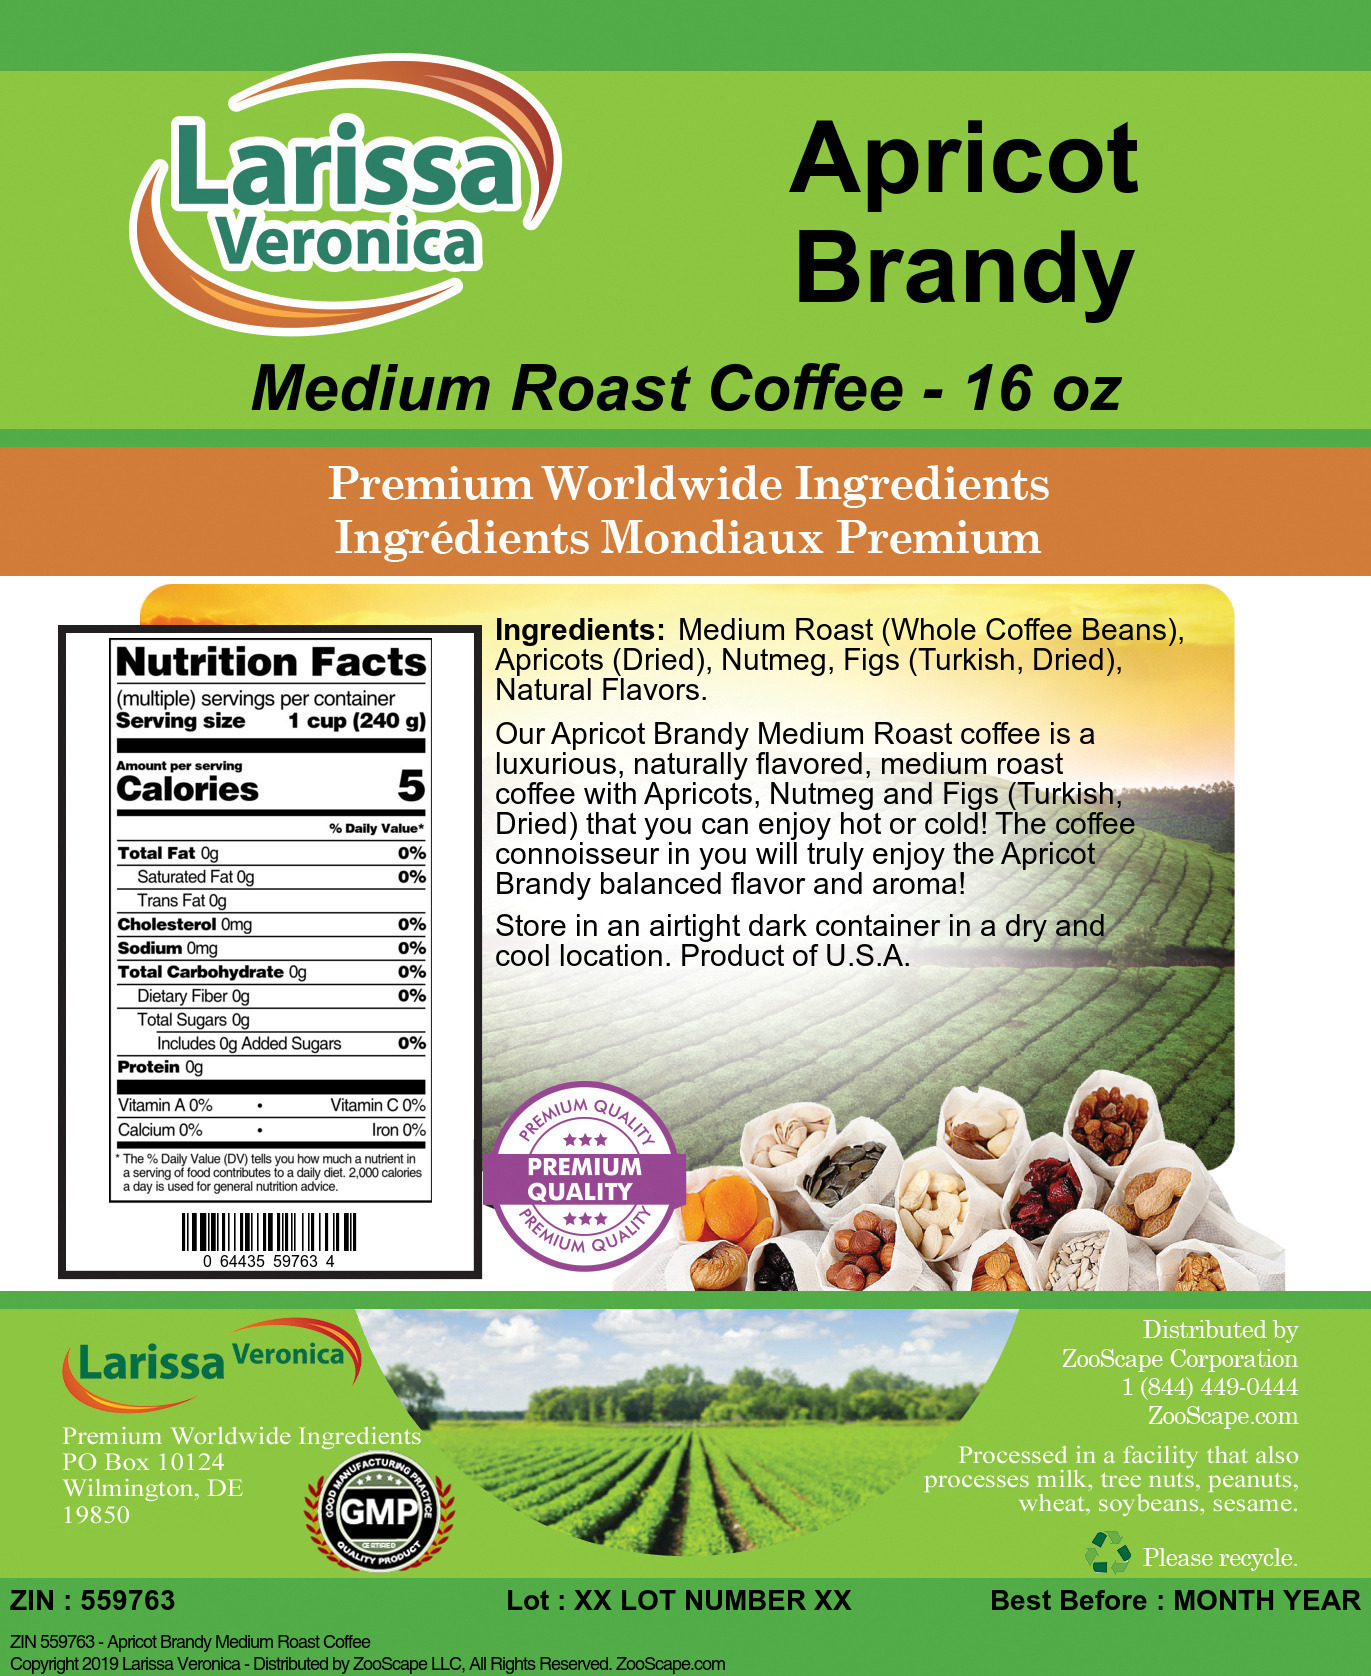 Apricot Brandy Medium Roast Coffee - Label